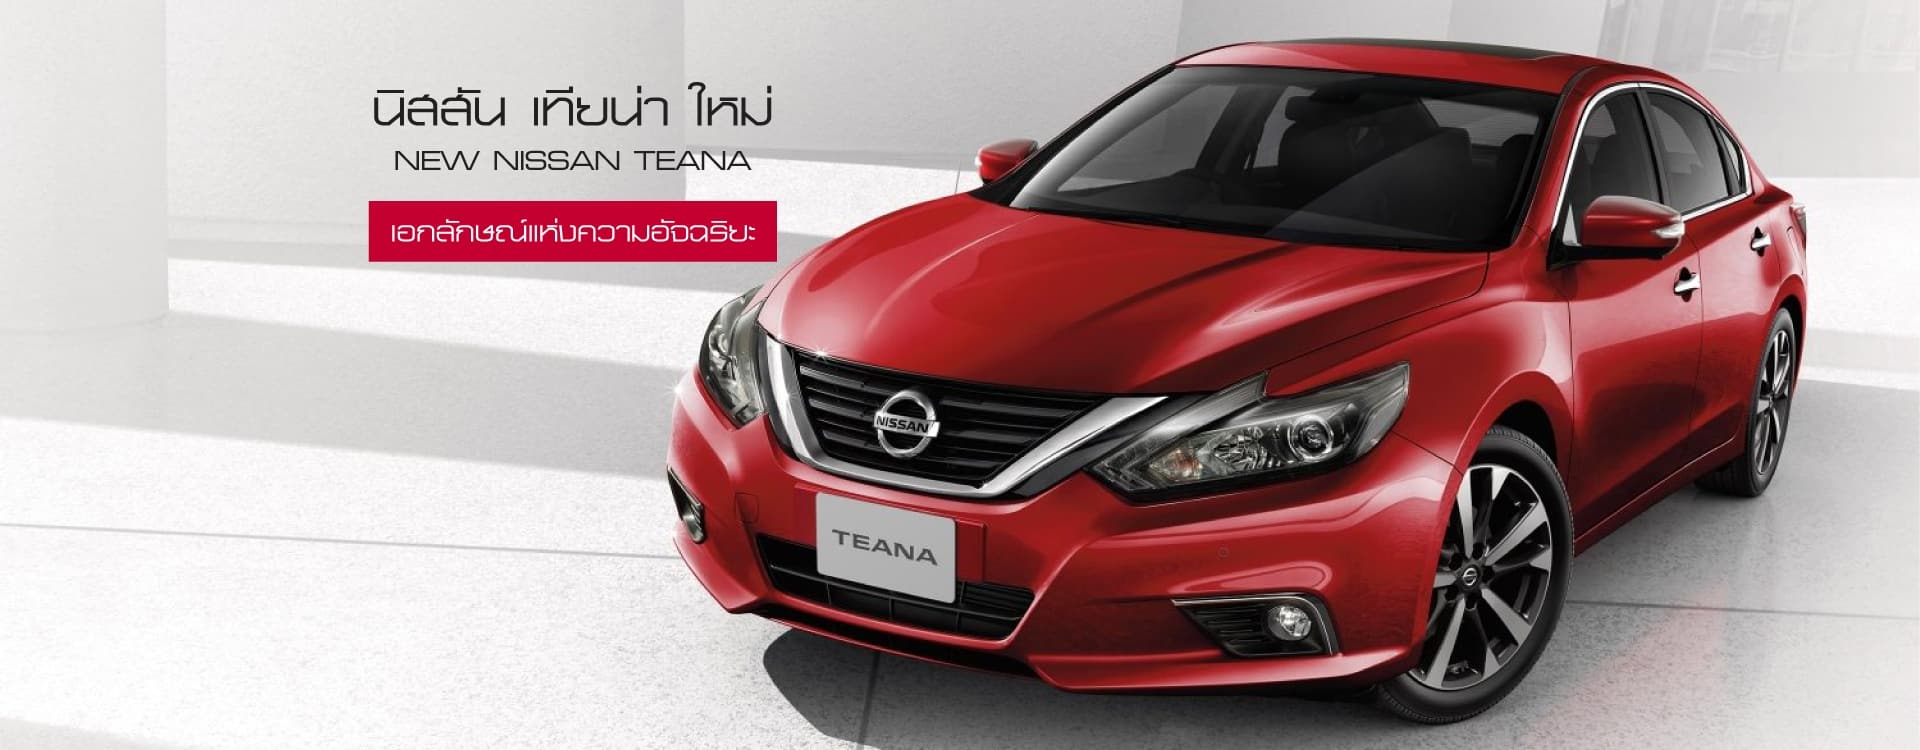 นิสสัน เทียน่า Nissan Teana : New-Nissan-Teana-Banner_1920x750px(1)